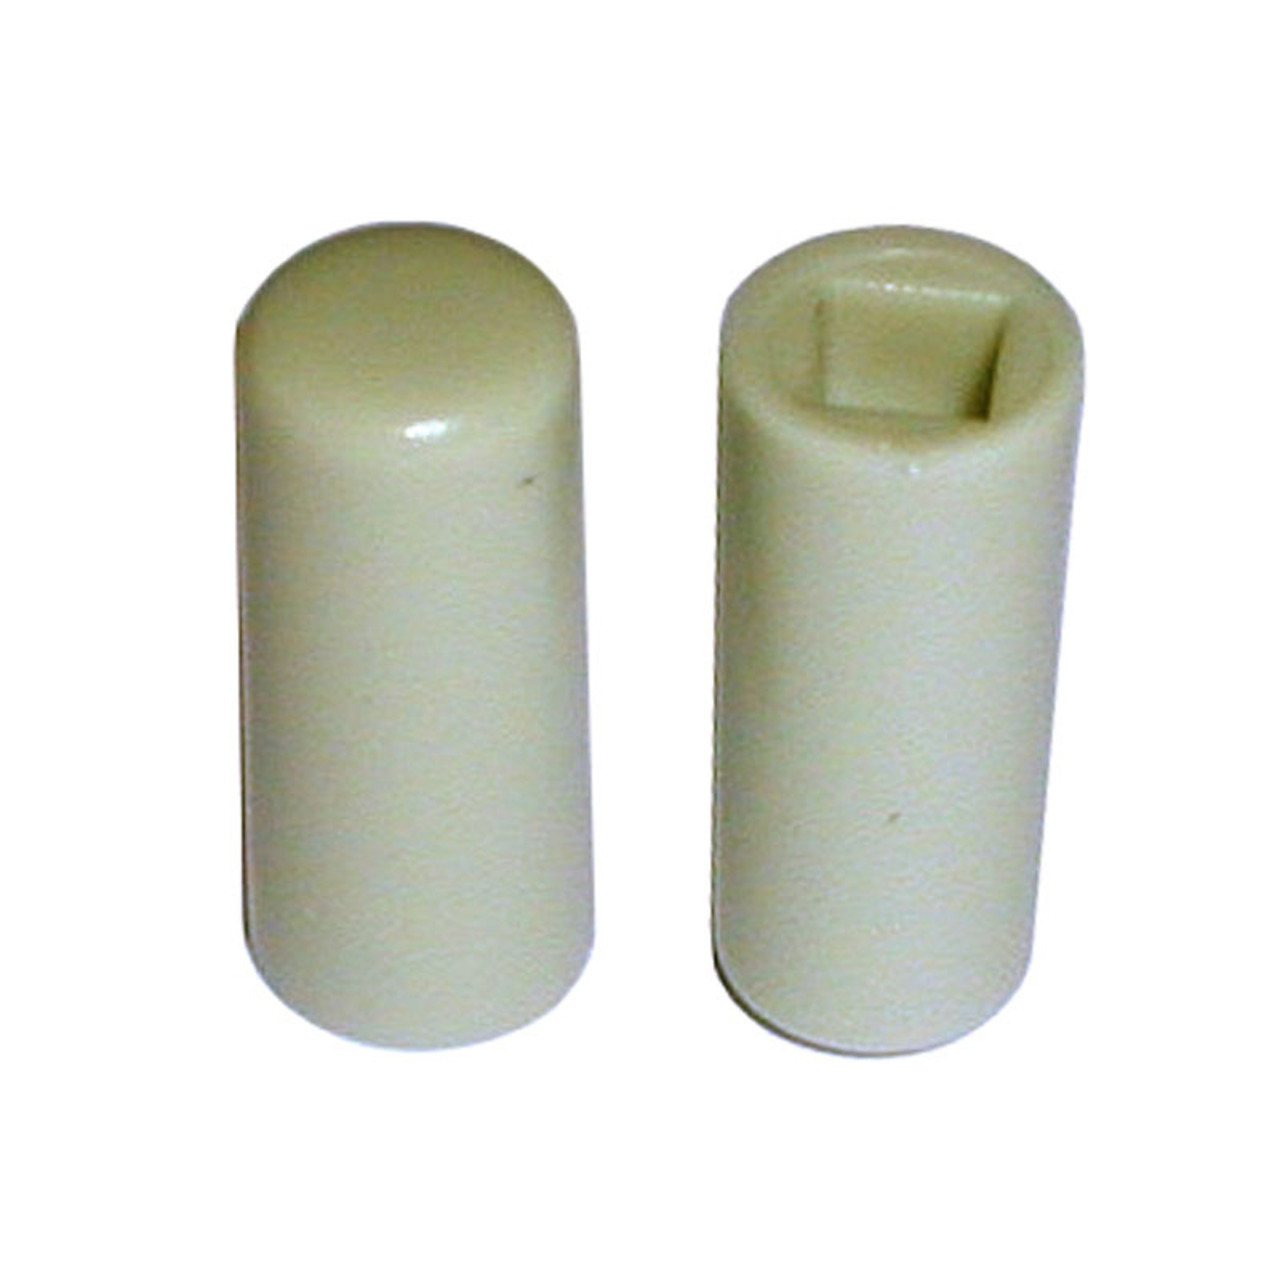 Tastknopf- grau- 18 x 7-7 mm Durchmesser unter Komponenten